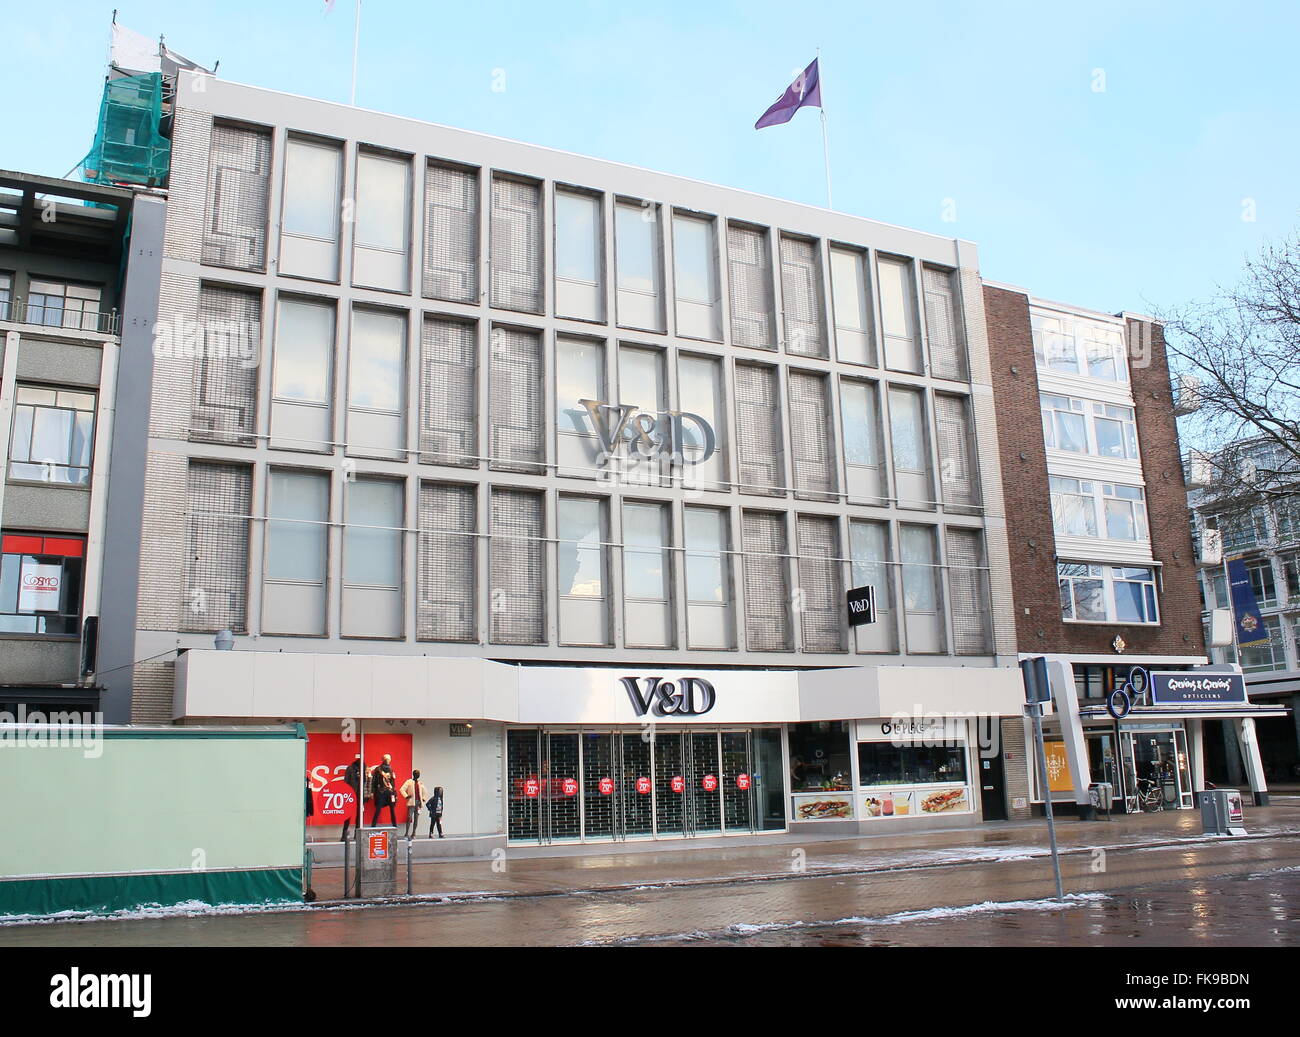 V&D department store (Vroom & Dreesmann) sur Grote Markt, Groningen, Pays-Bas. Banktruptcy en février 2016 Banque D'Images